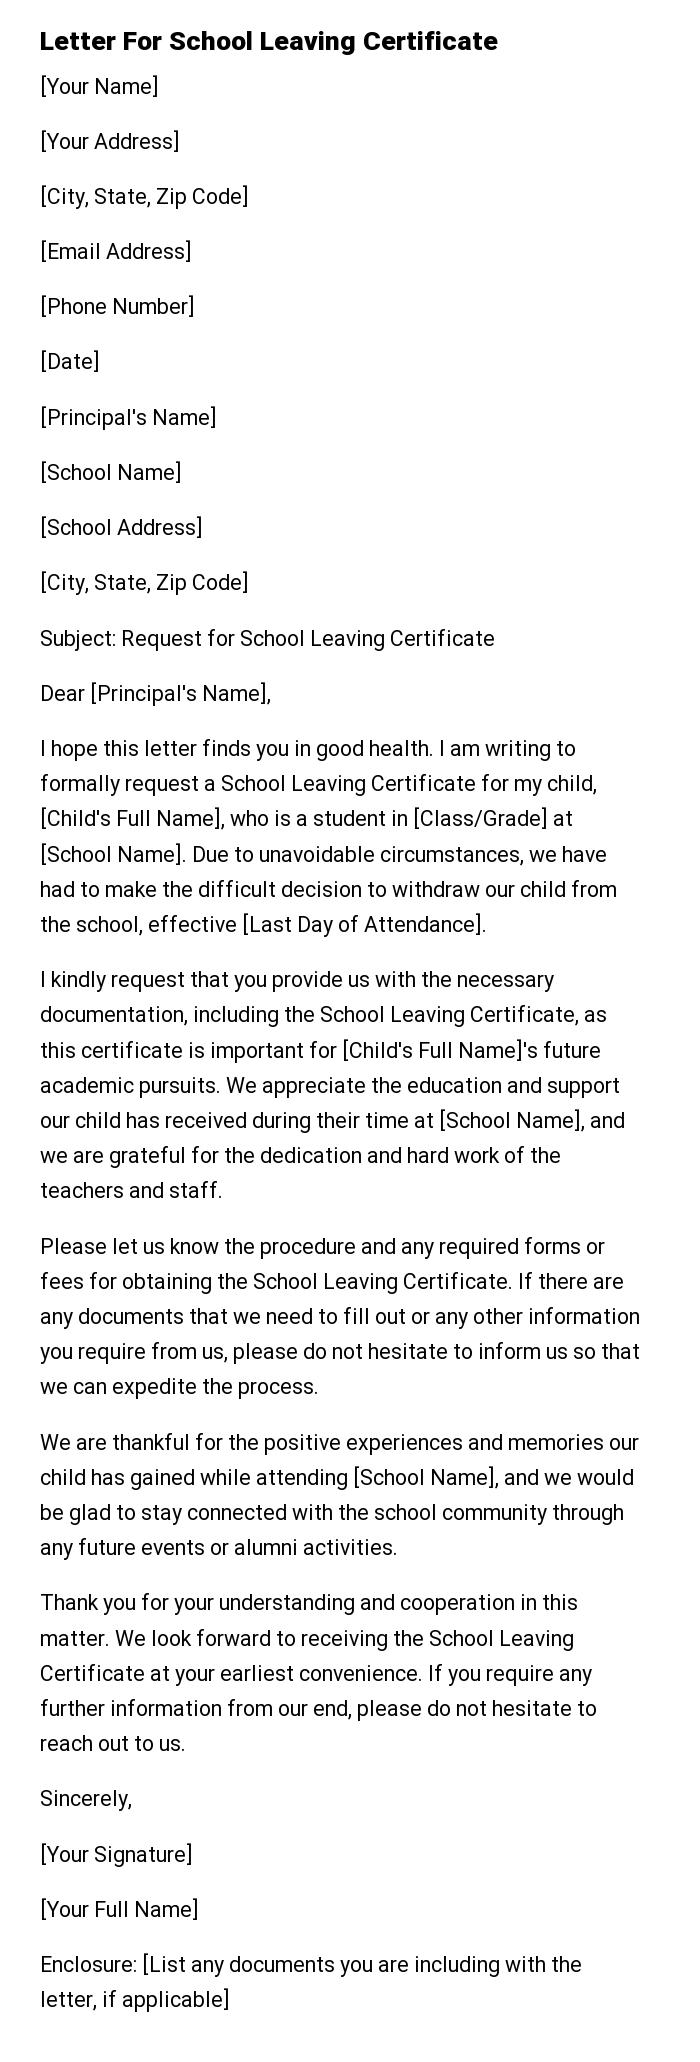 Letter For School Leaving Certificate